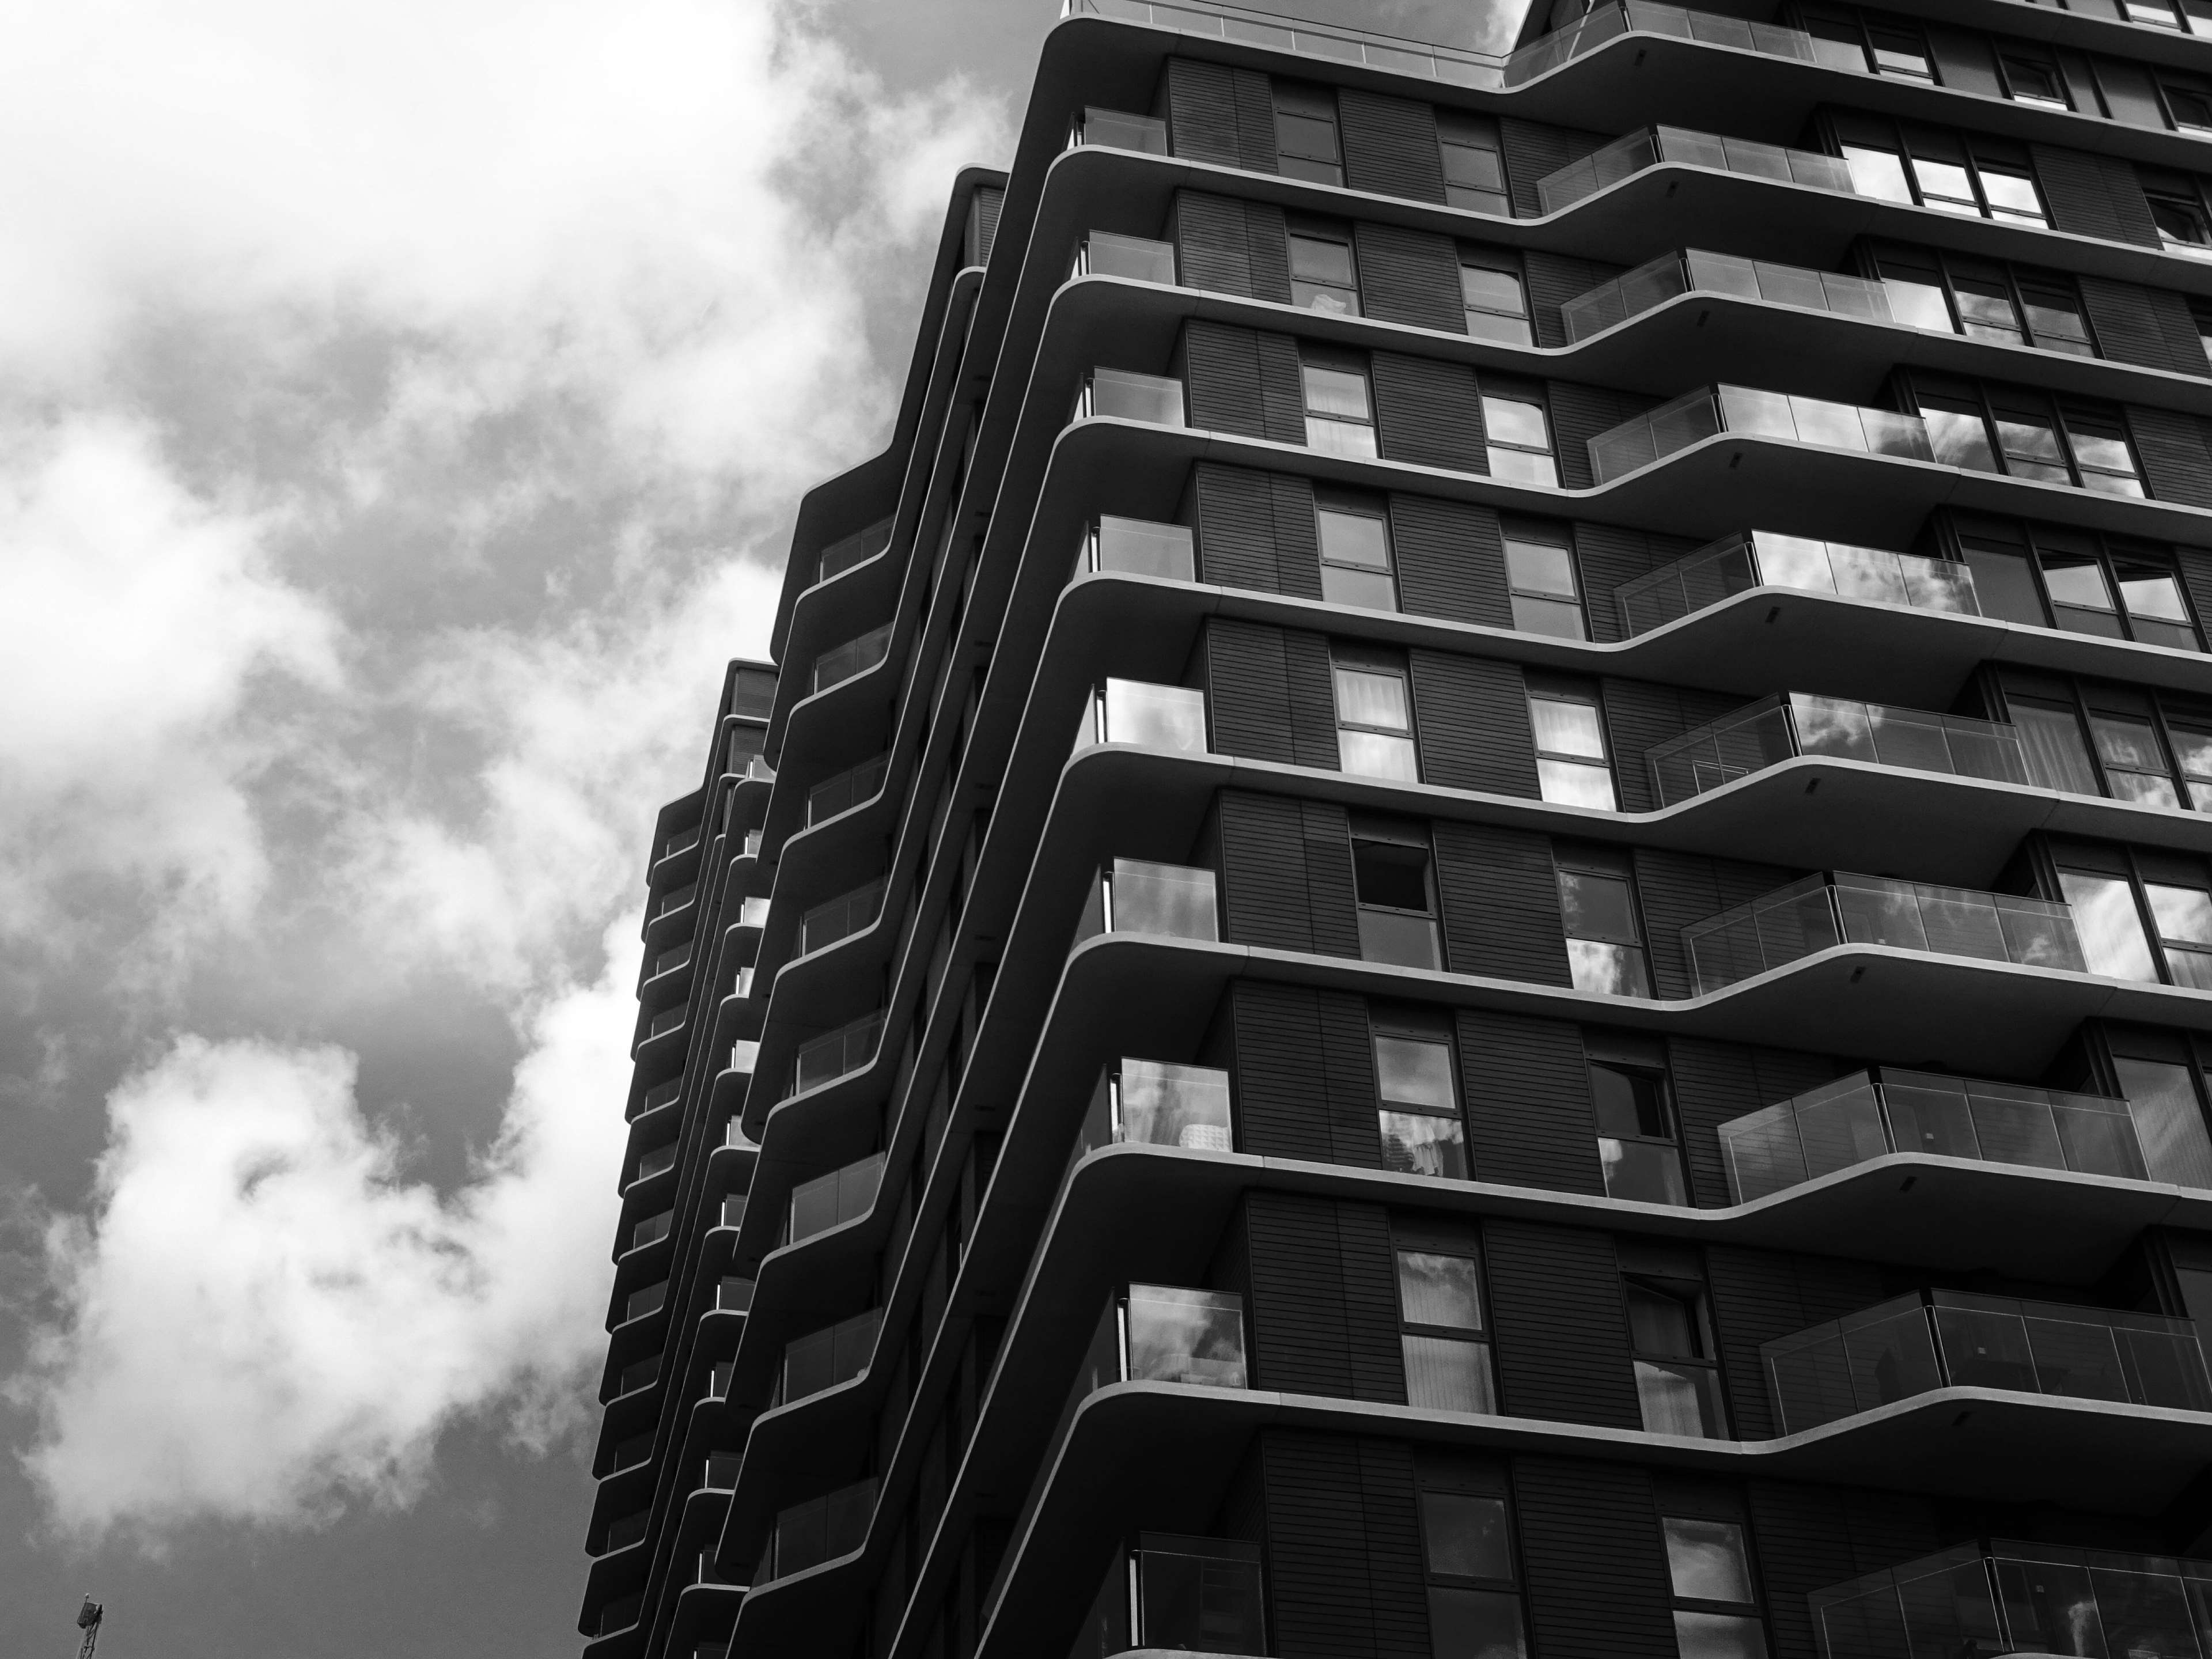 Architecture Black And White Building Monochrome